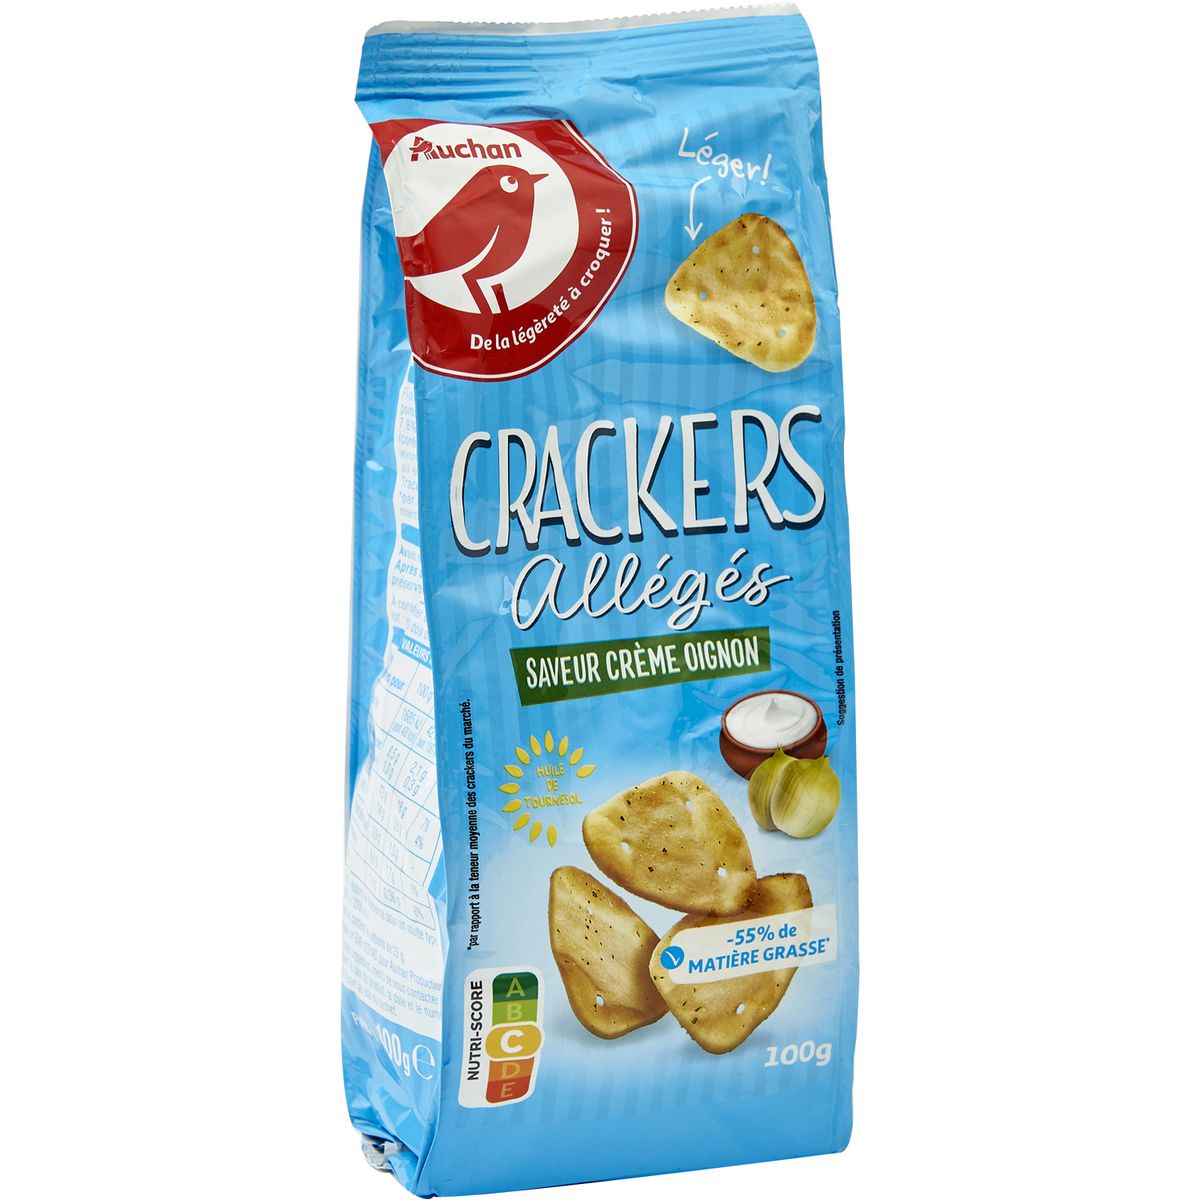 AUCHAN Crackers saveur crème oignon 100g